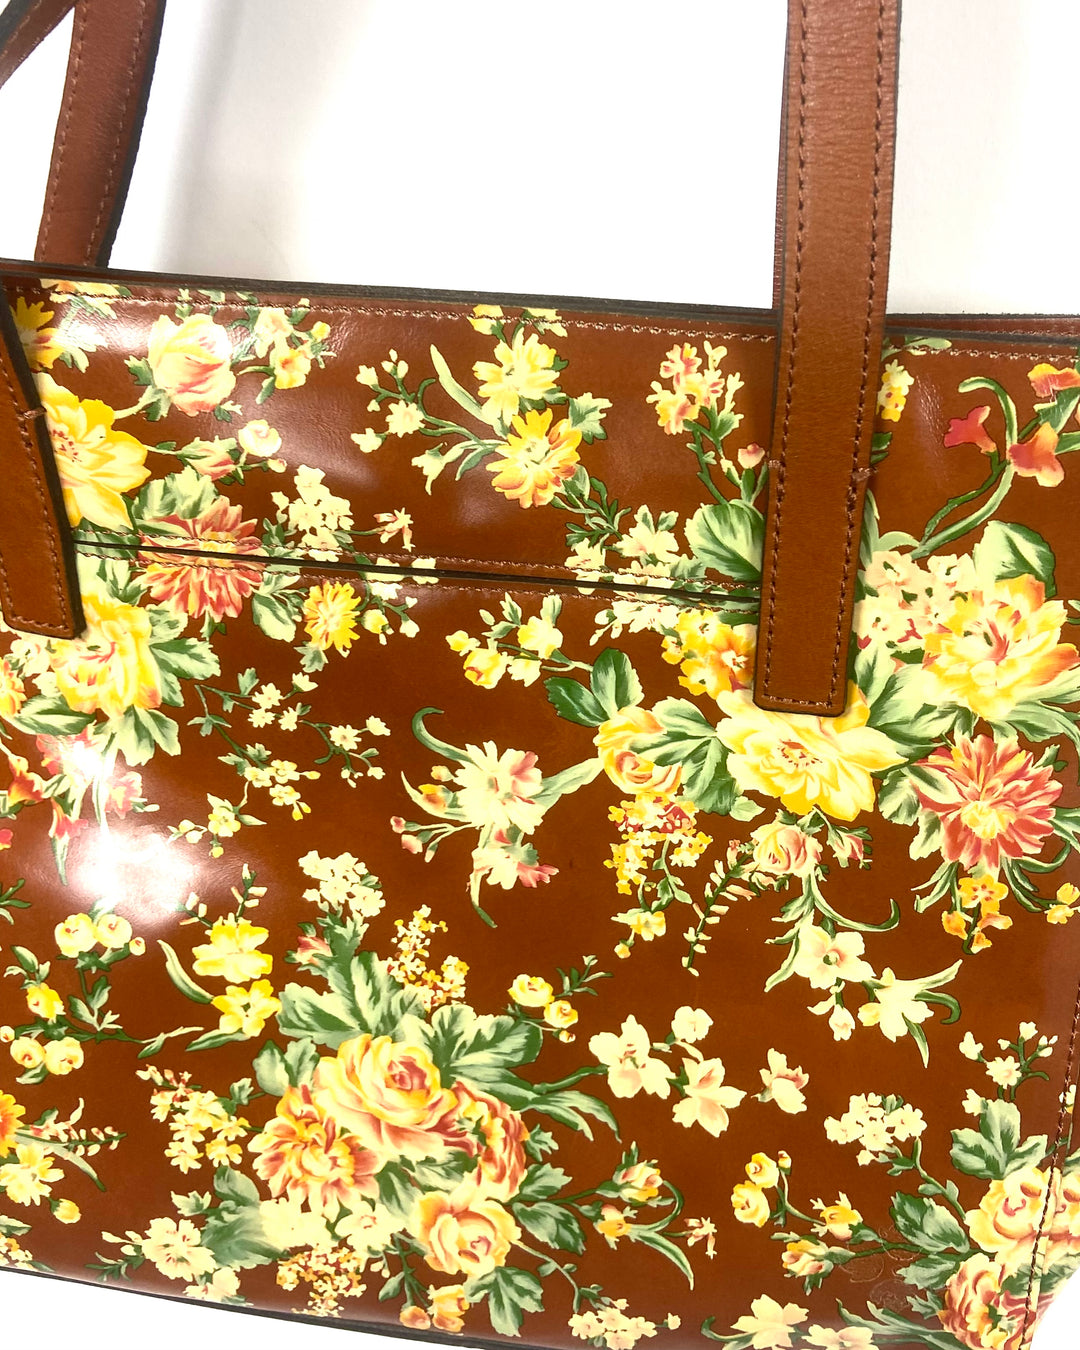 Brown Floral Leather Shoulder Bag